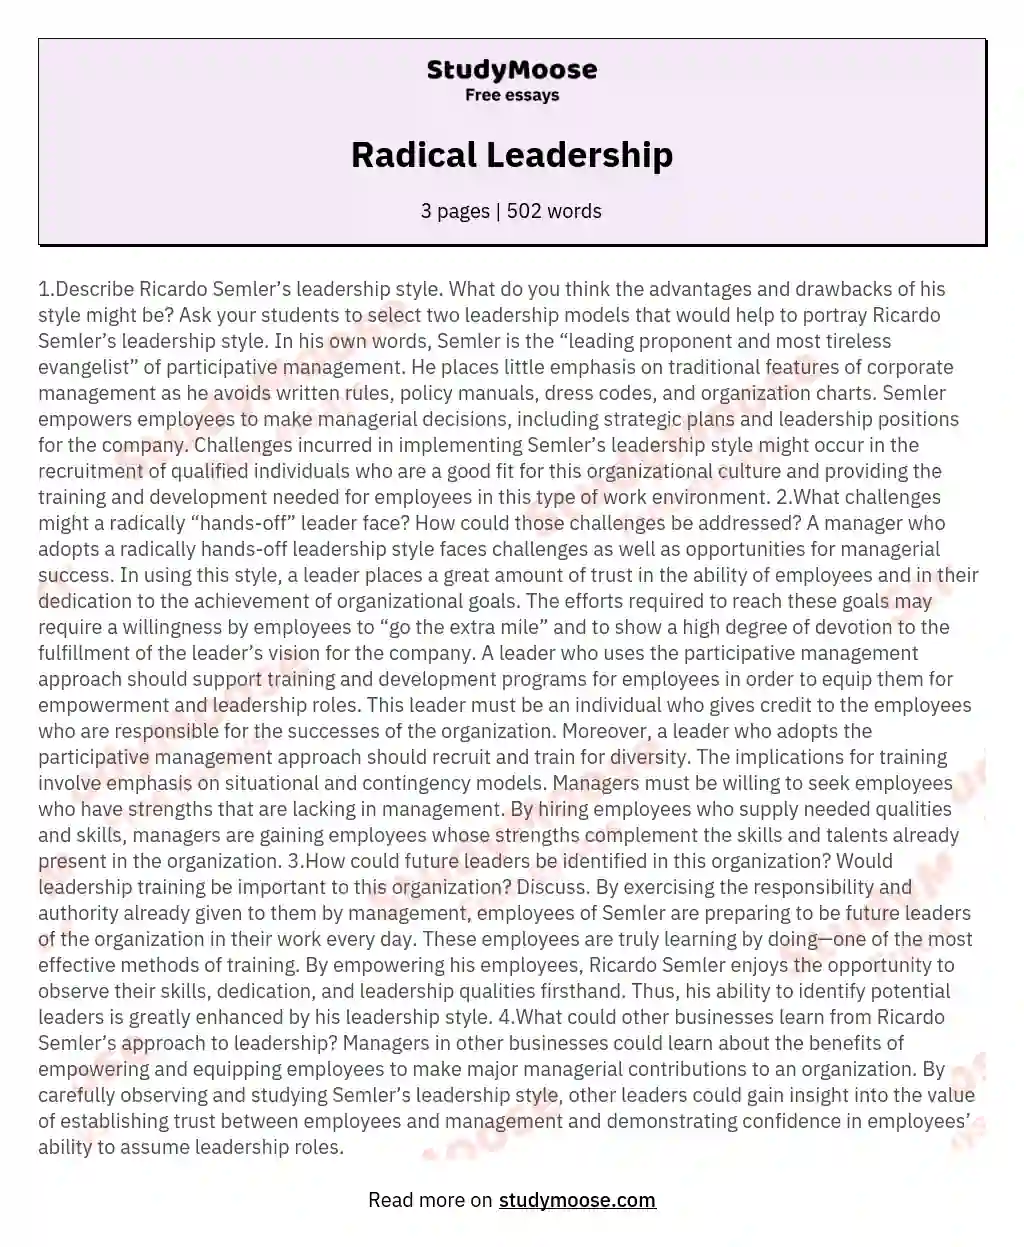 Radical Leadership essay